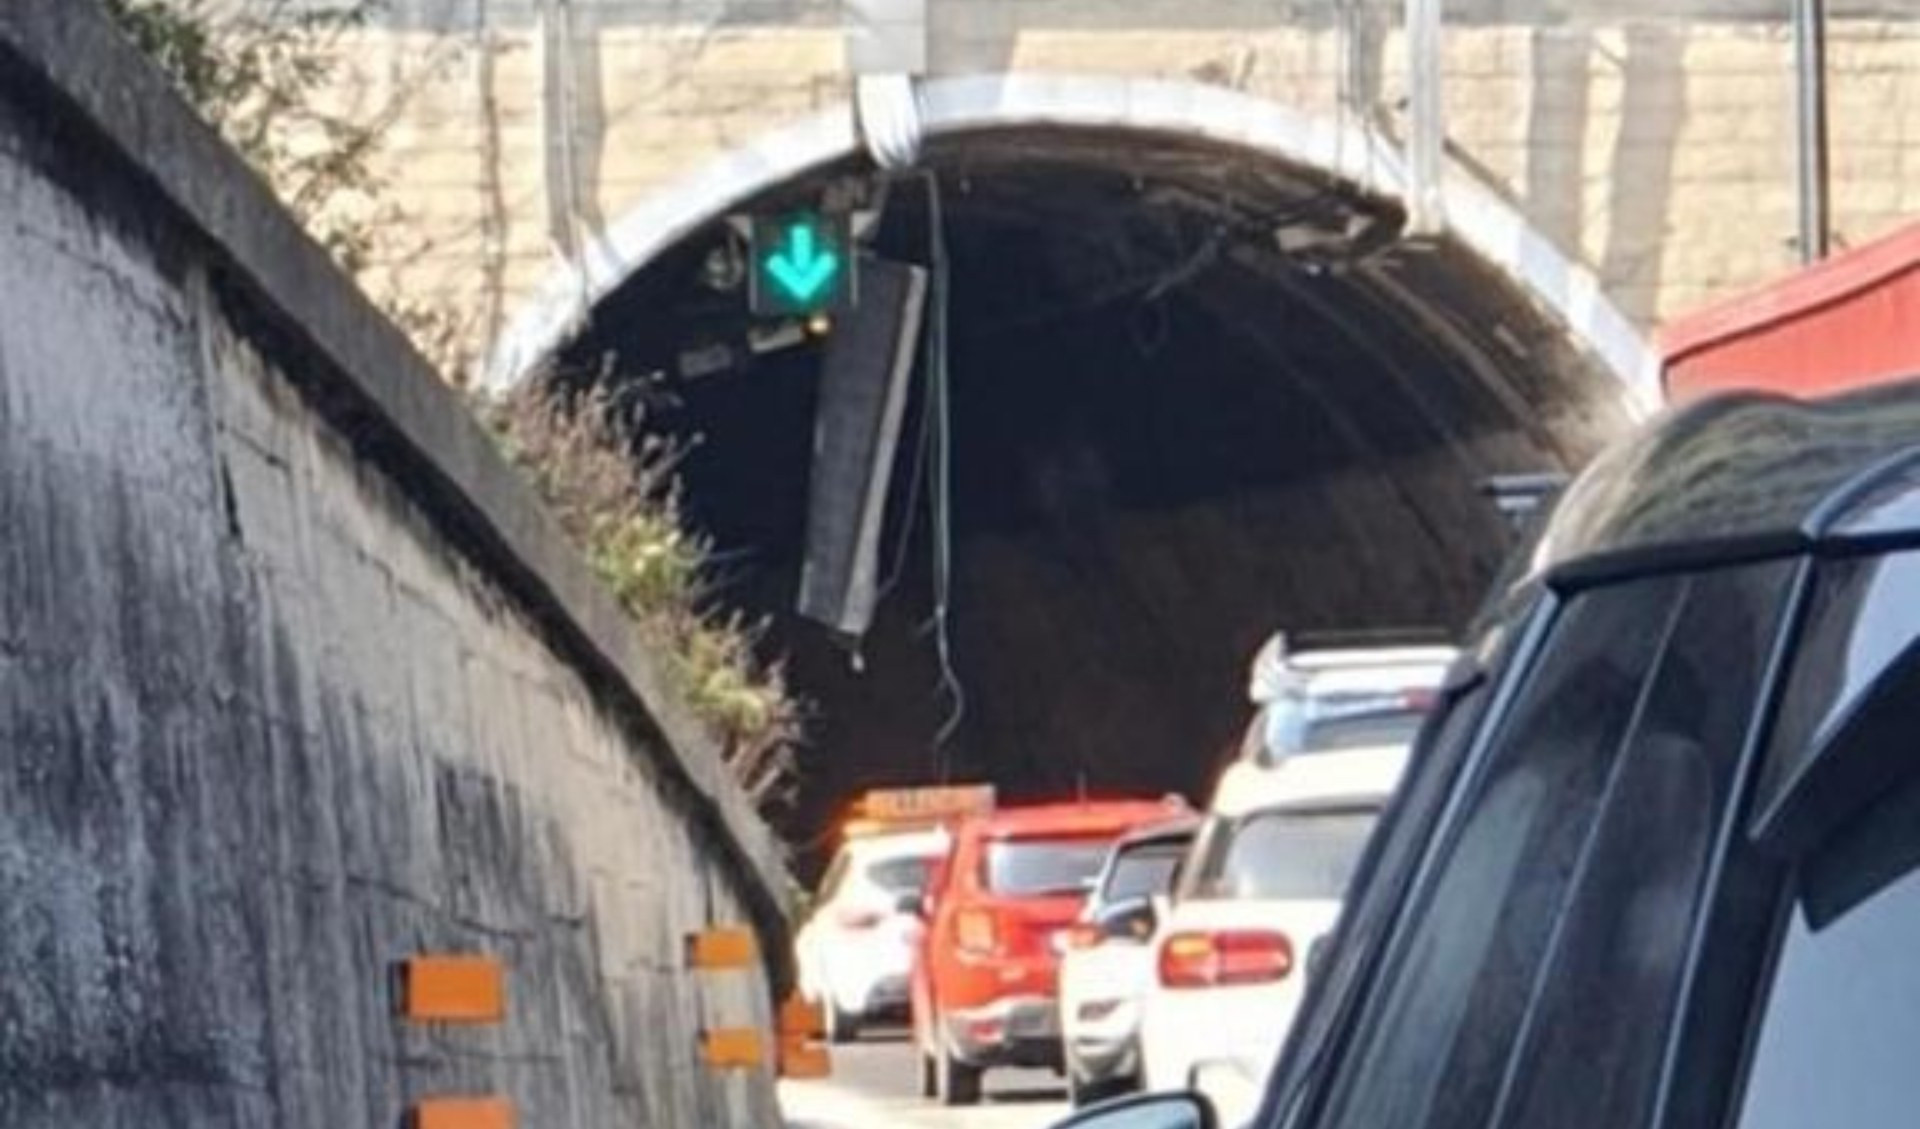 Caos autostrade: coda di 5 km tra Genova Aeroporto e Pra' per incidente